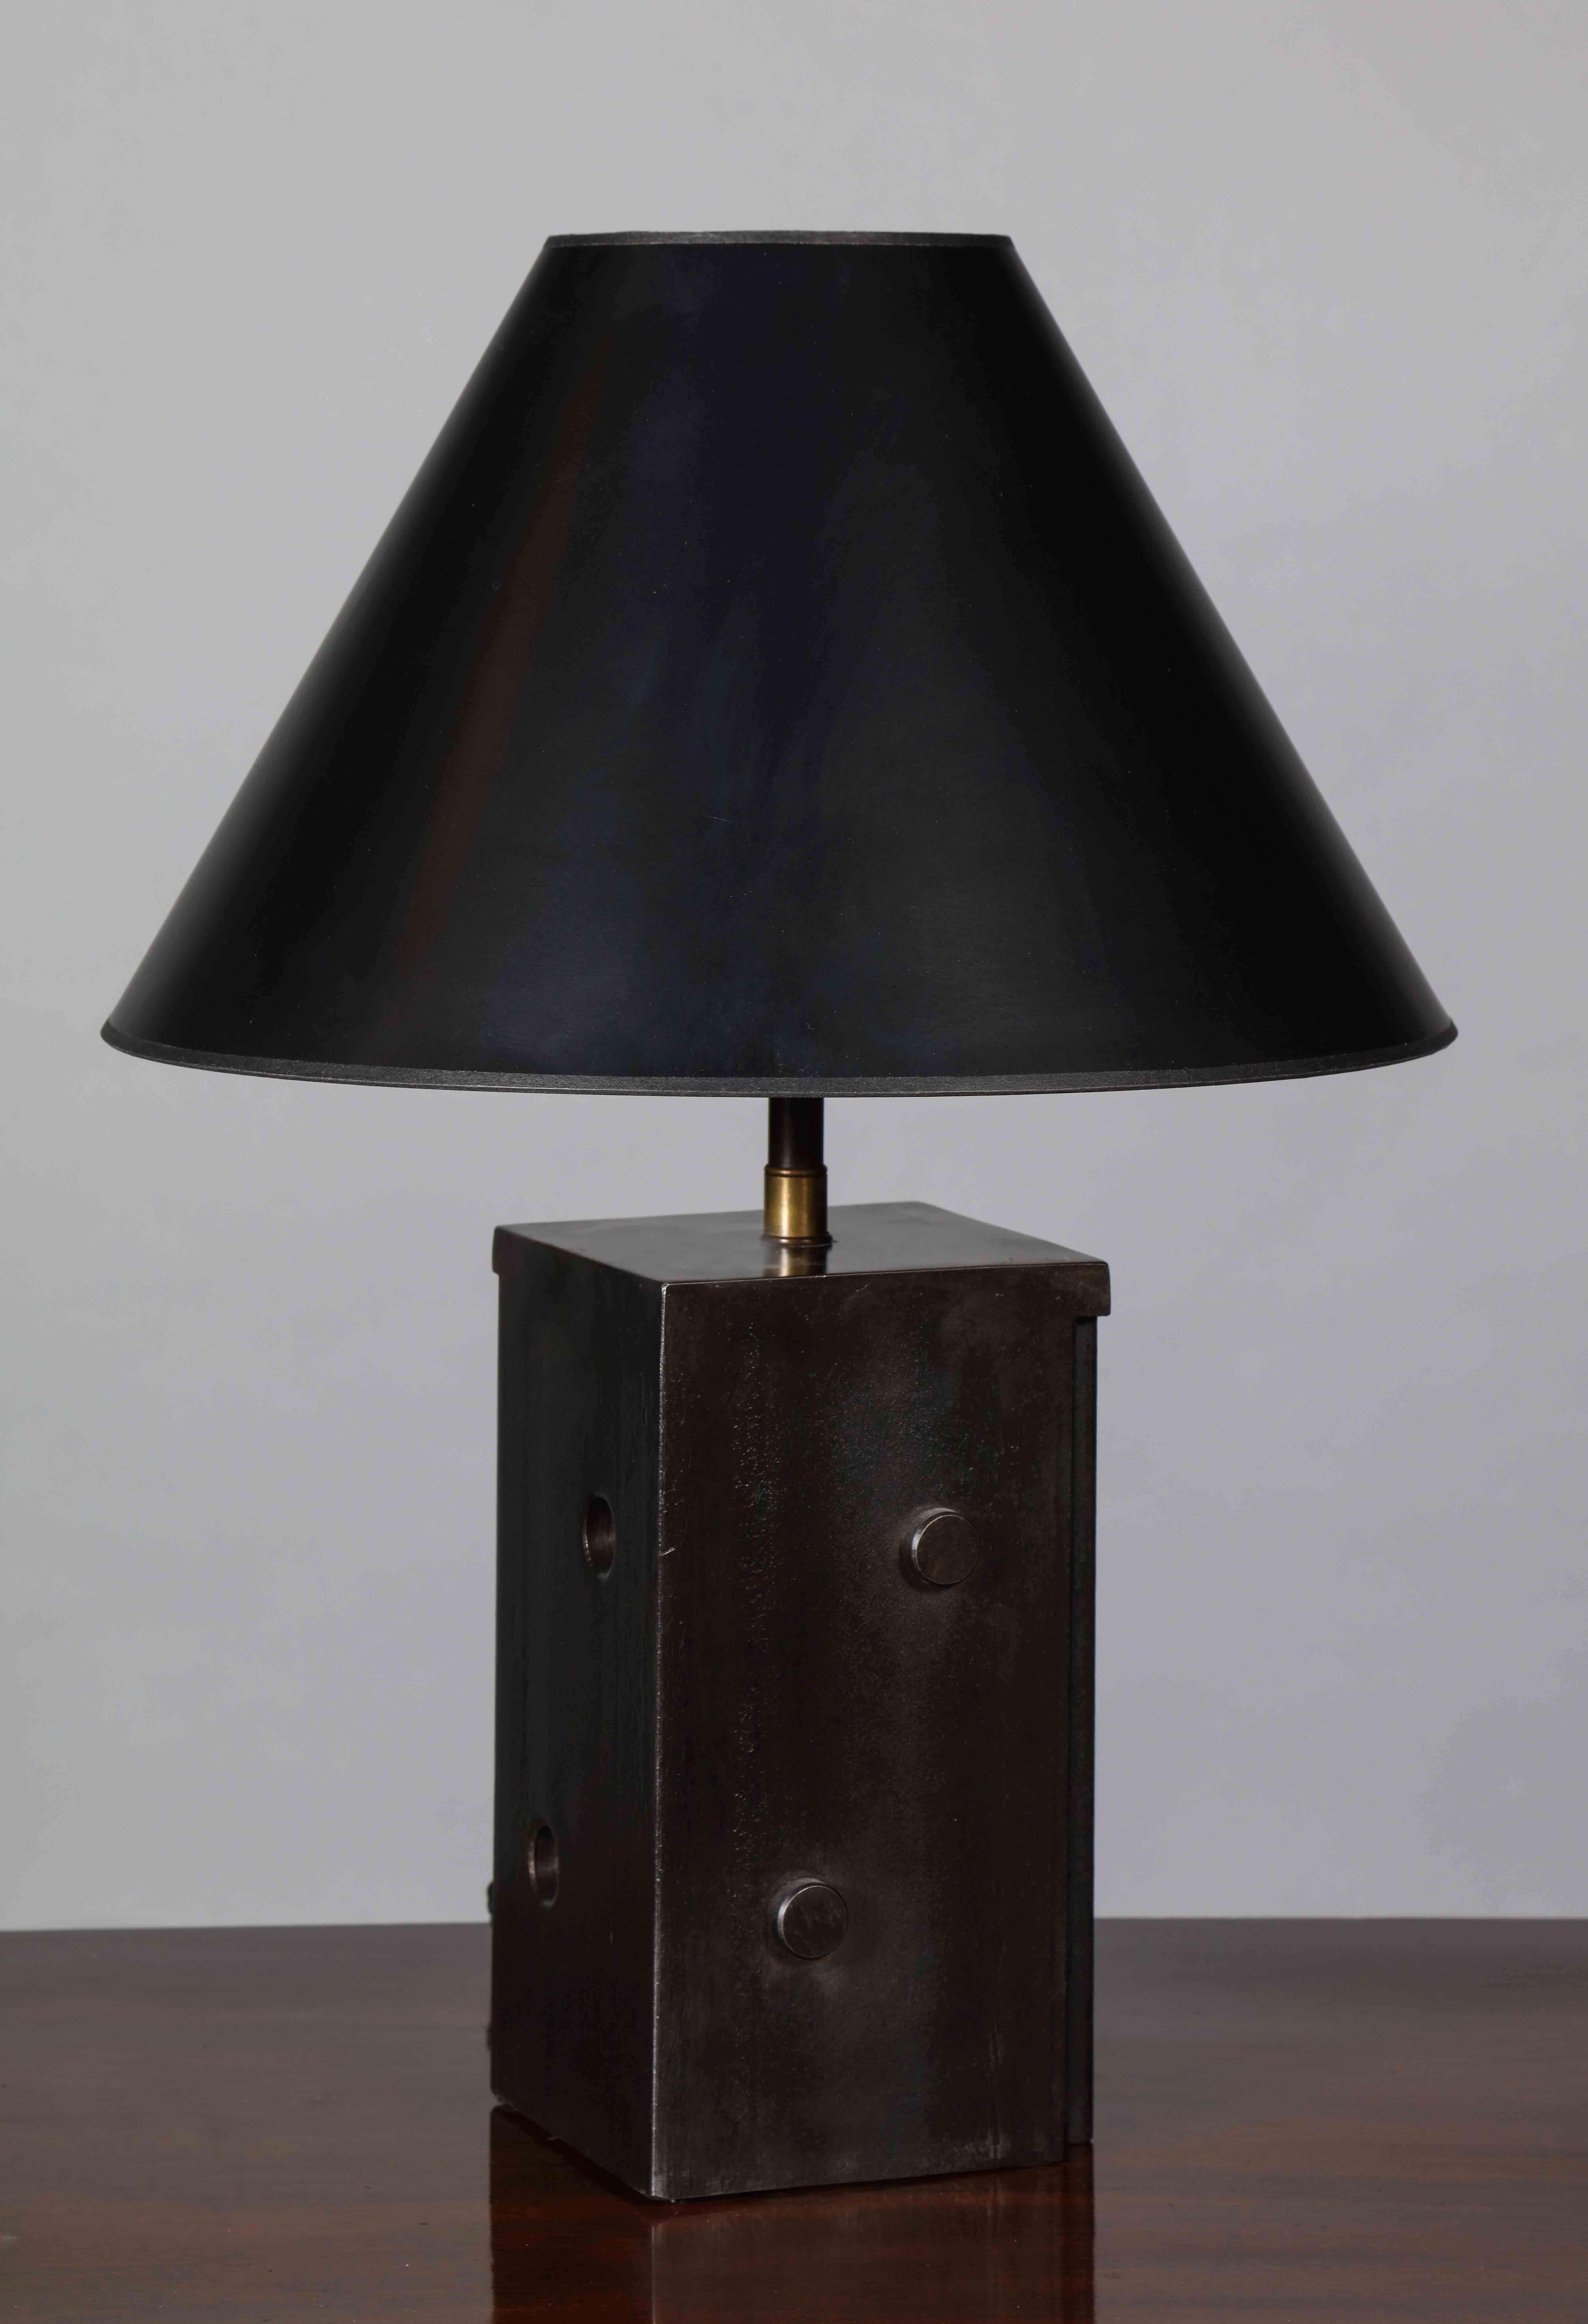 Une lampe de table effilée construite en acier laminé à chaud avec une surface à la fois texturée et polie, avec des découpes circulaires et des détails appliqués. La forme ressemble de manière ludique à un dé, mais les deux fentes coniques